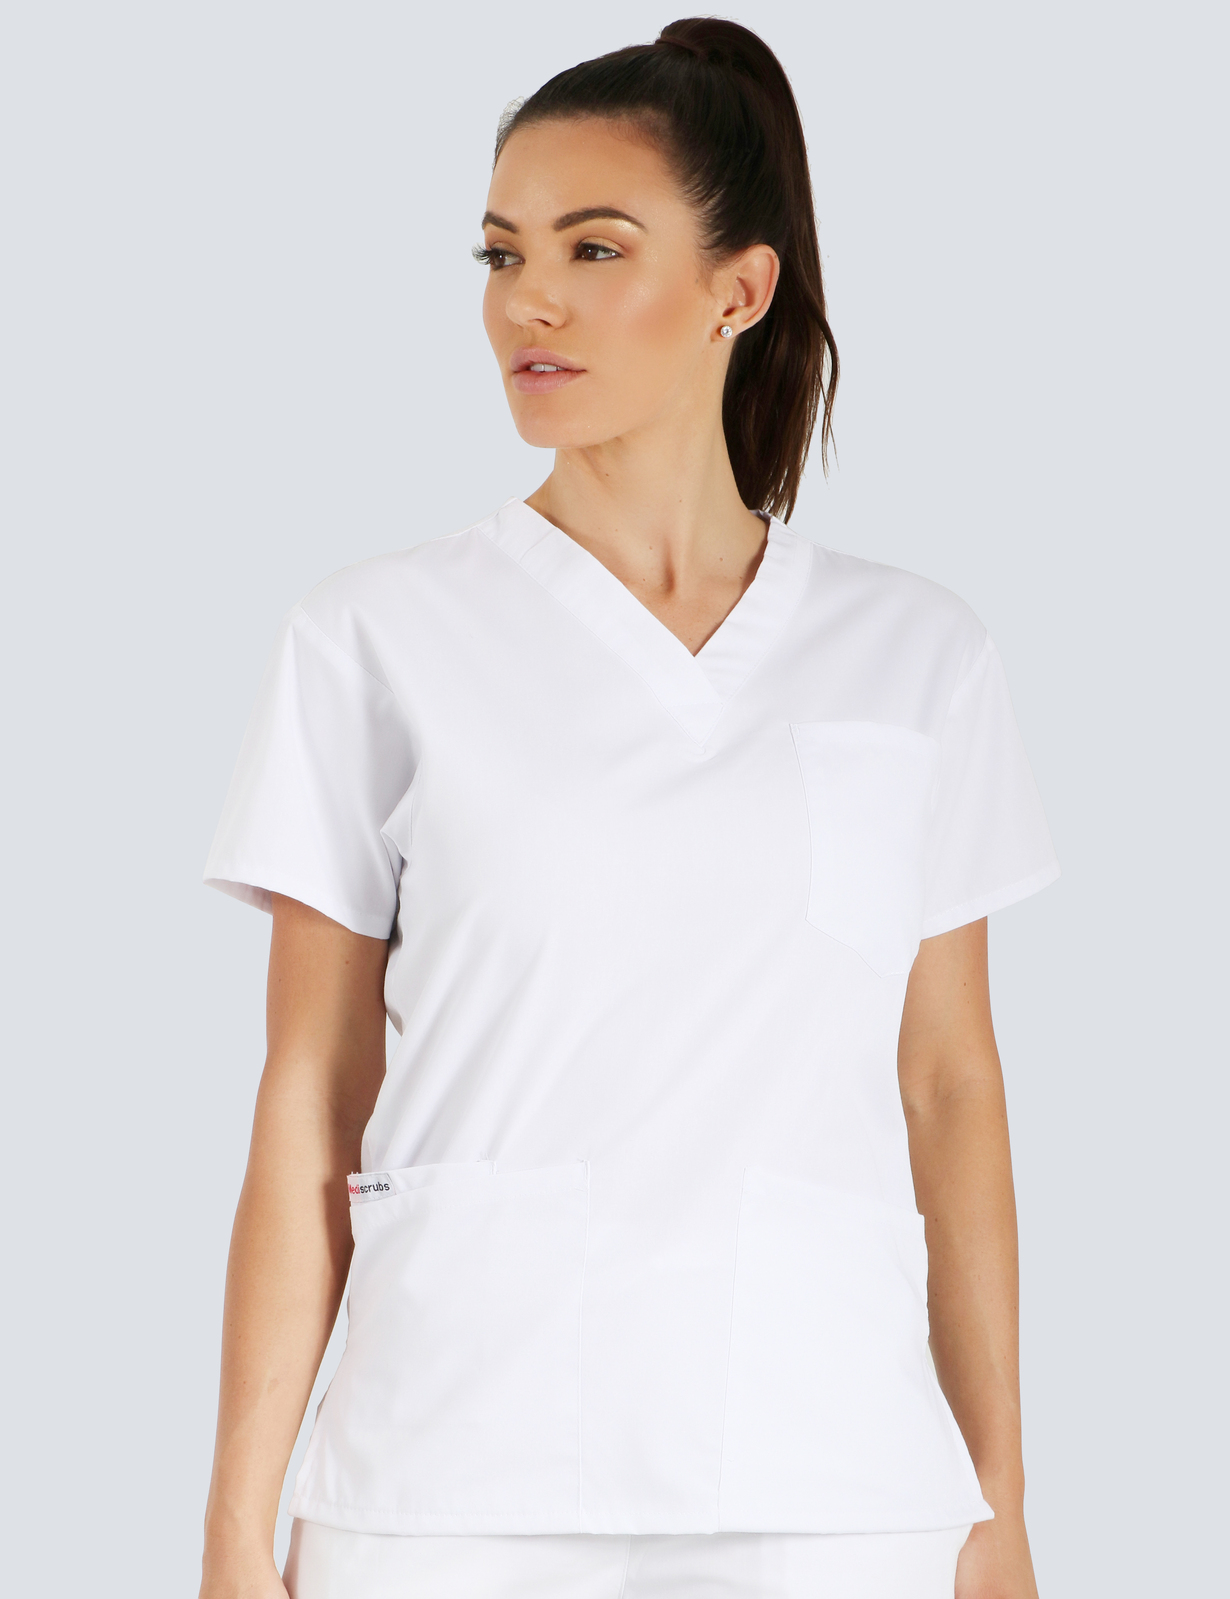 Queensland Children's Hospital Emergency Department Senior Medical Officer Uniform Top Bundle  (4 Pocket Top in White  incl Logos)